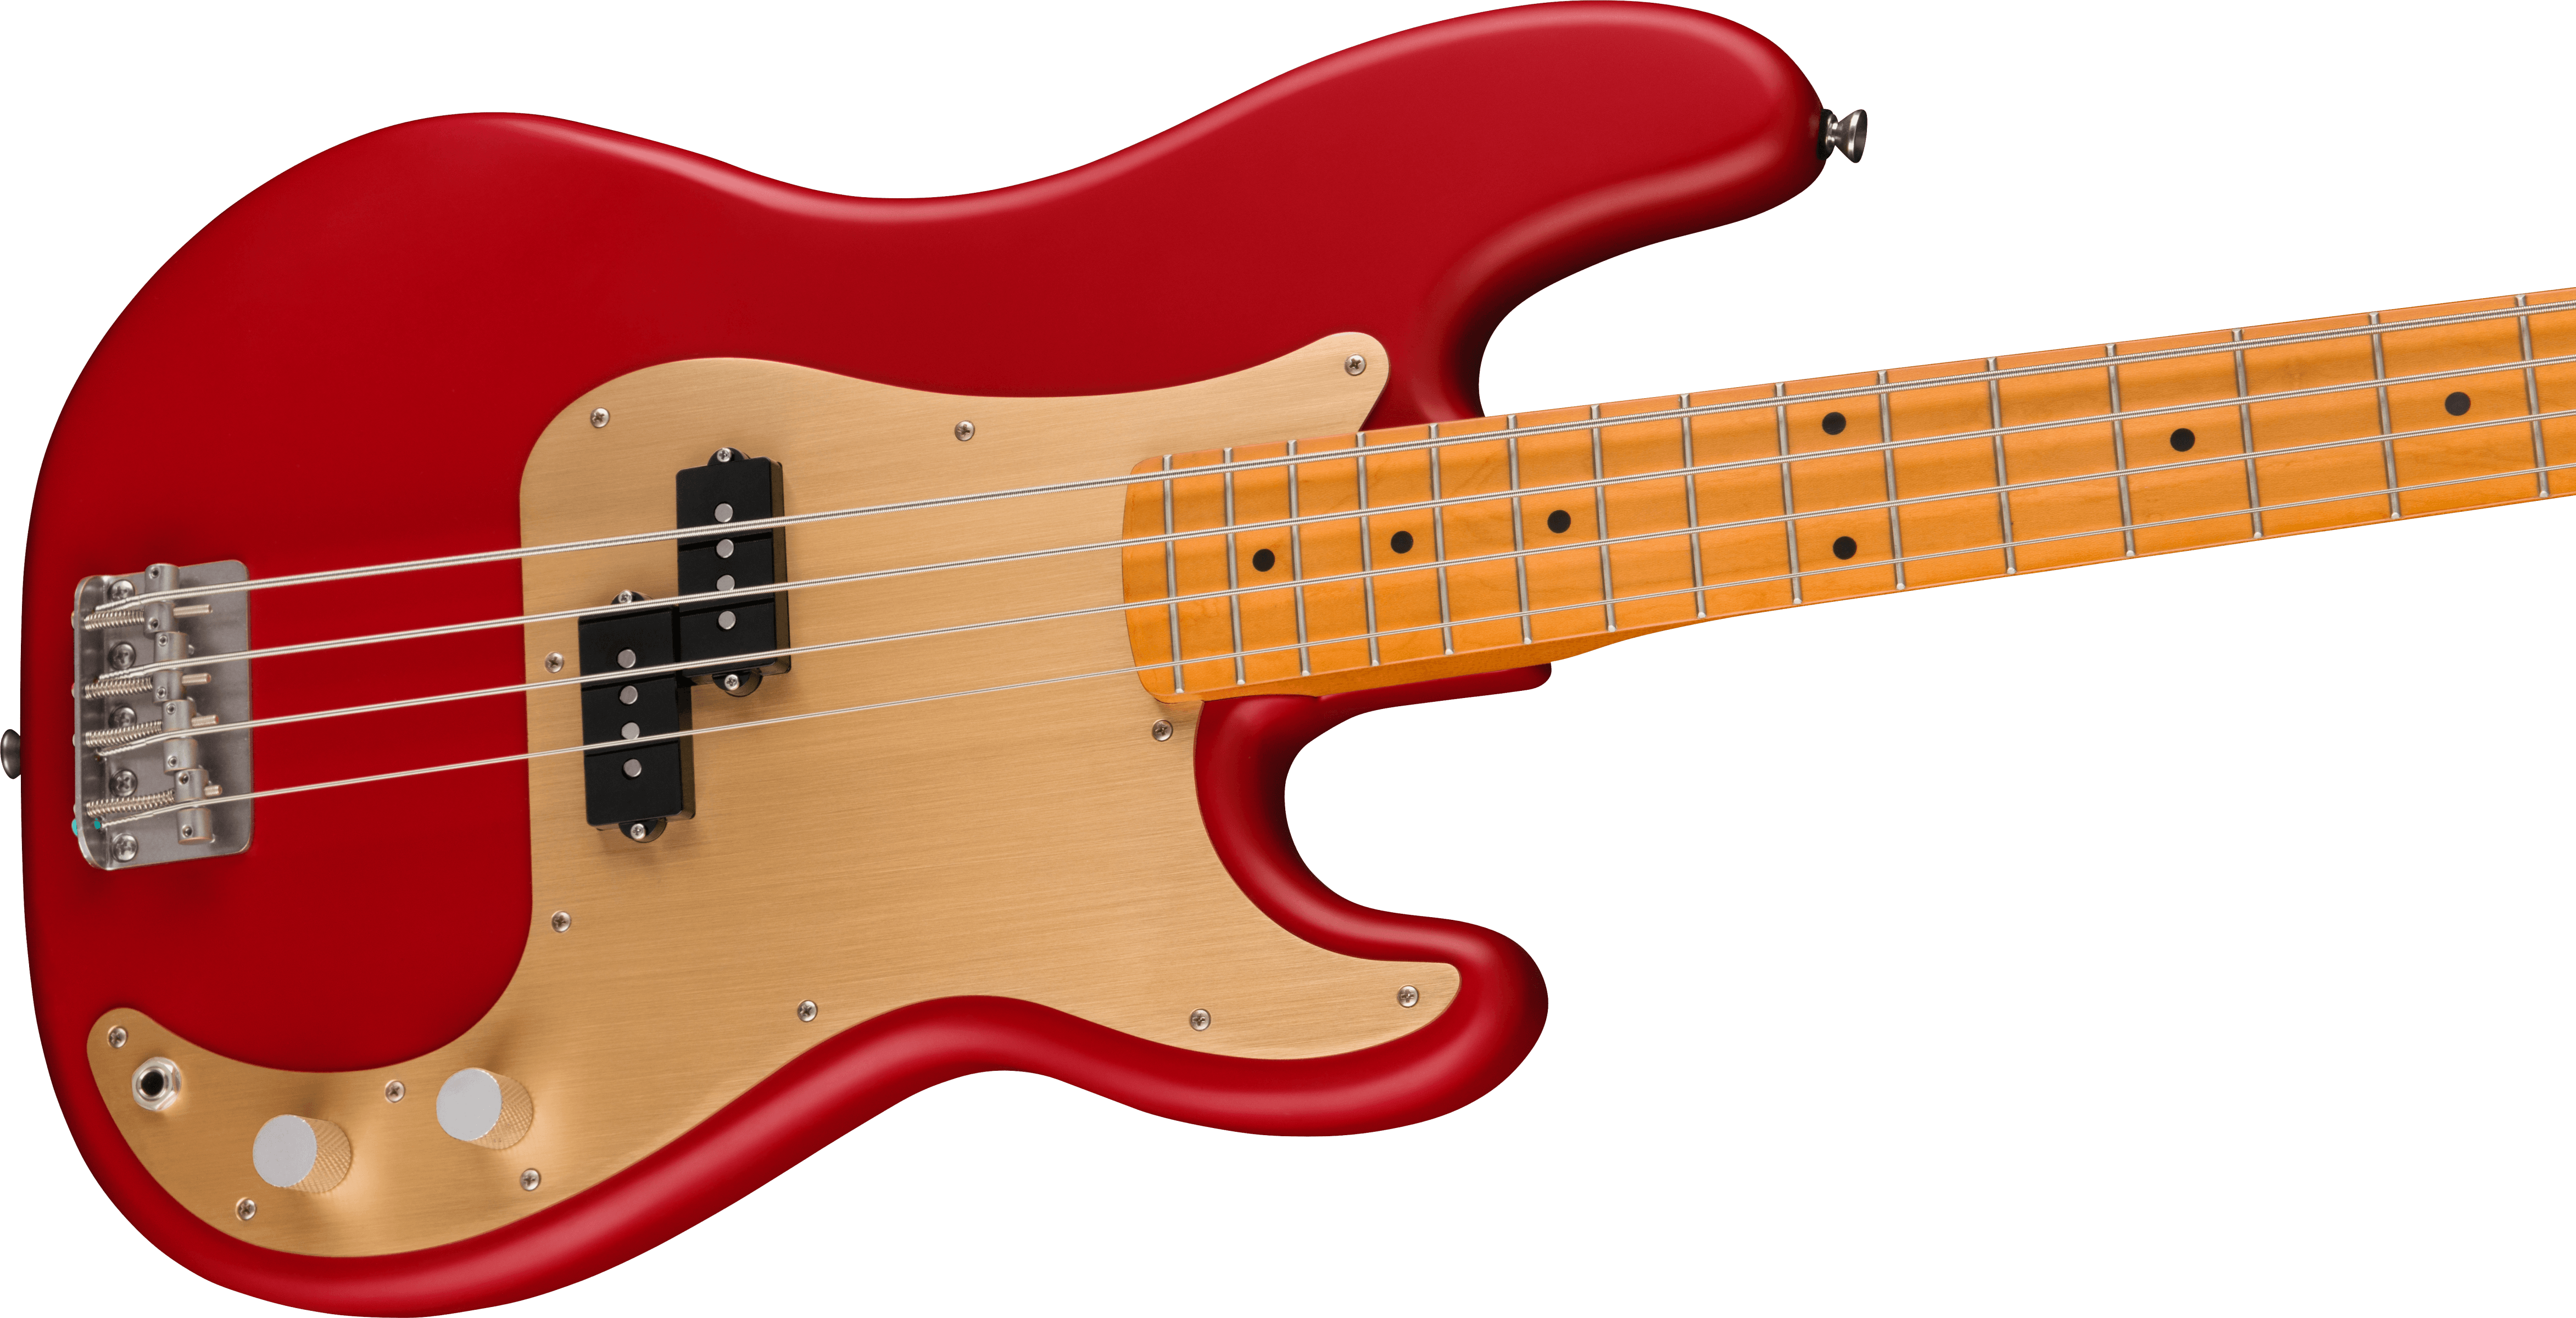 Squier Precision Bass 40th Anniversary Gold Edition Mn - Satin Dakota Red - Bajo eléctrico de cuerpo sólido - Variation 3